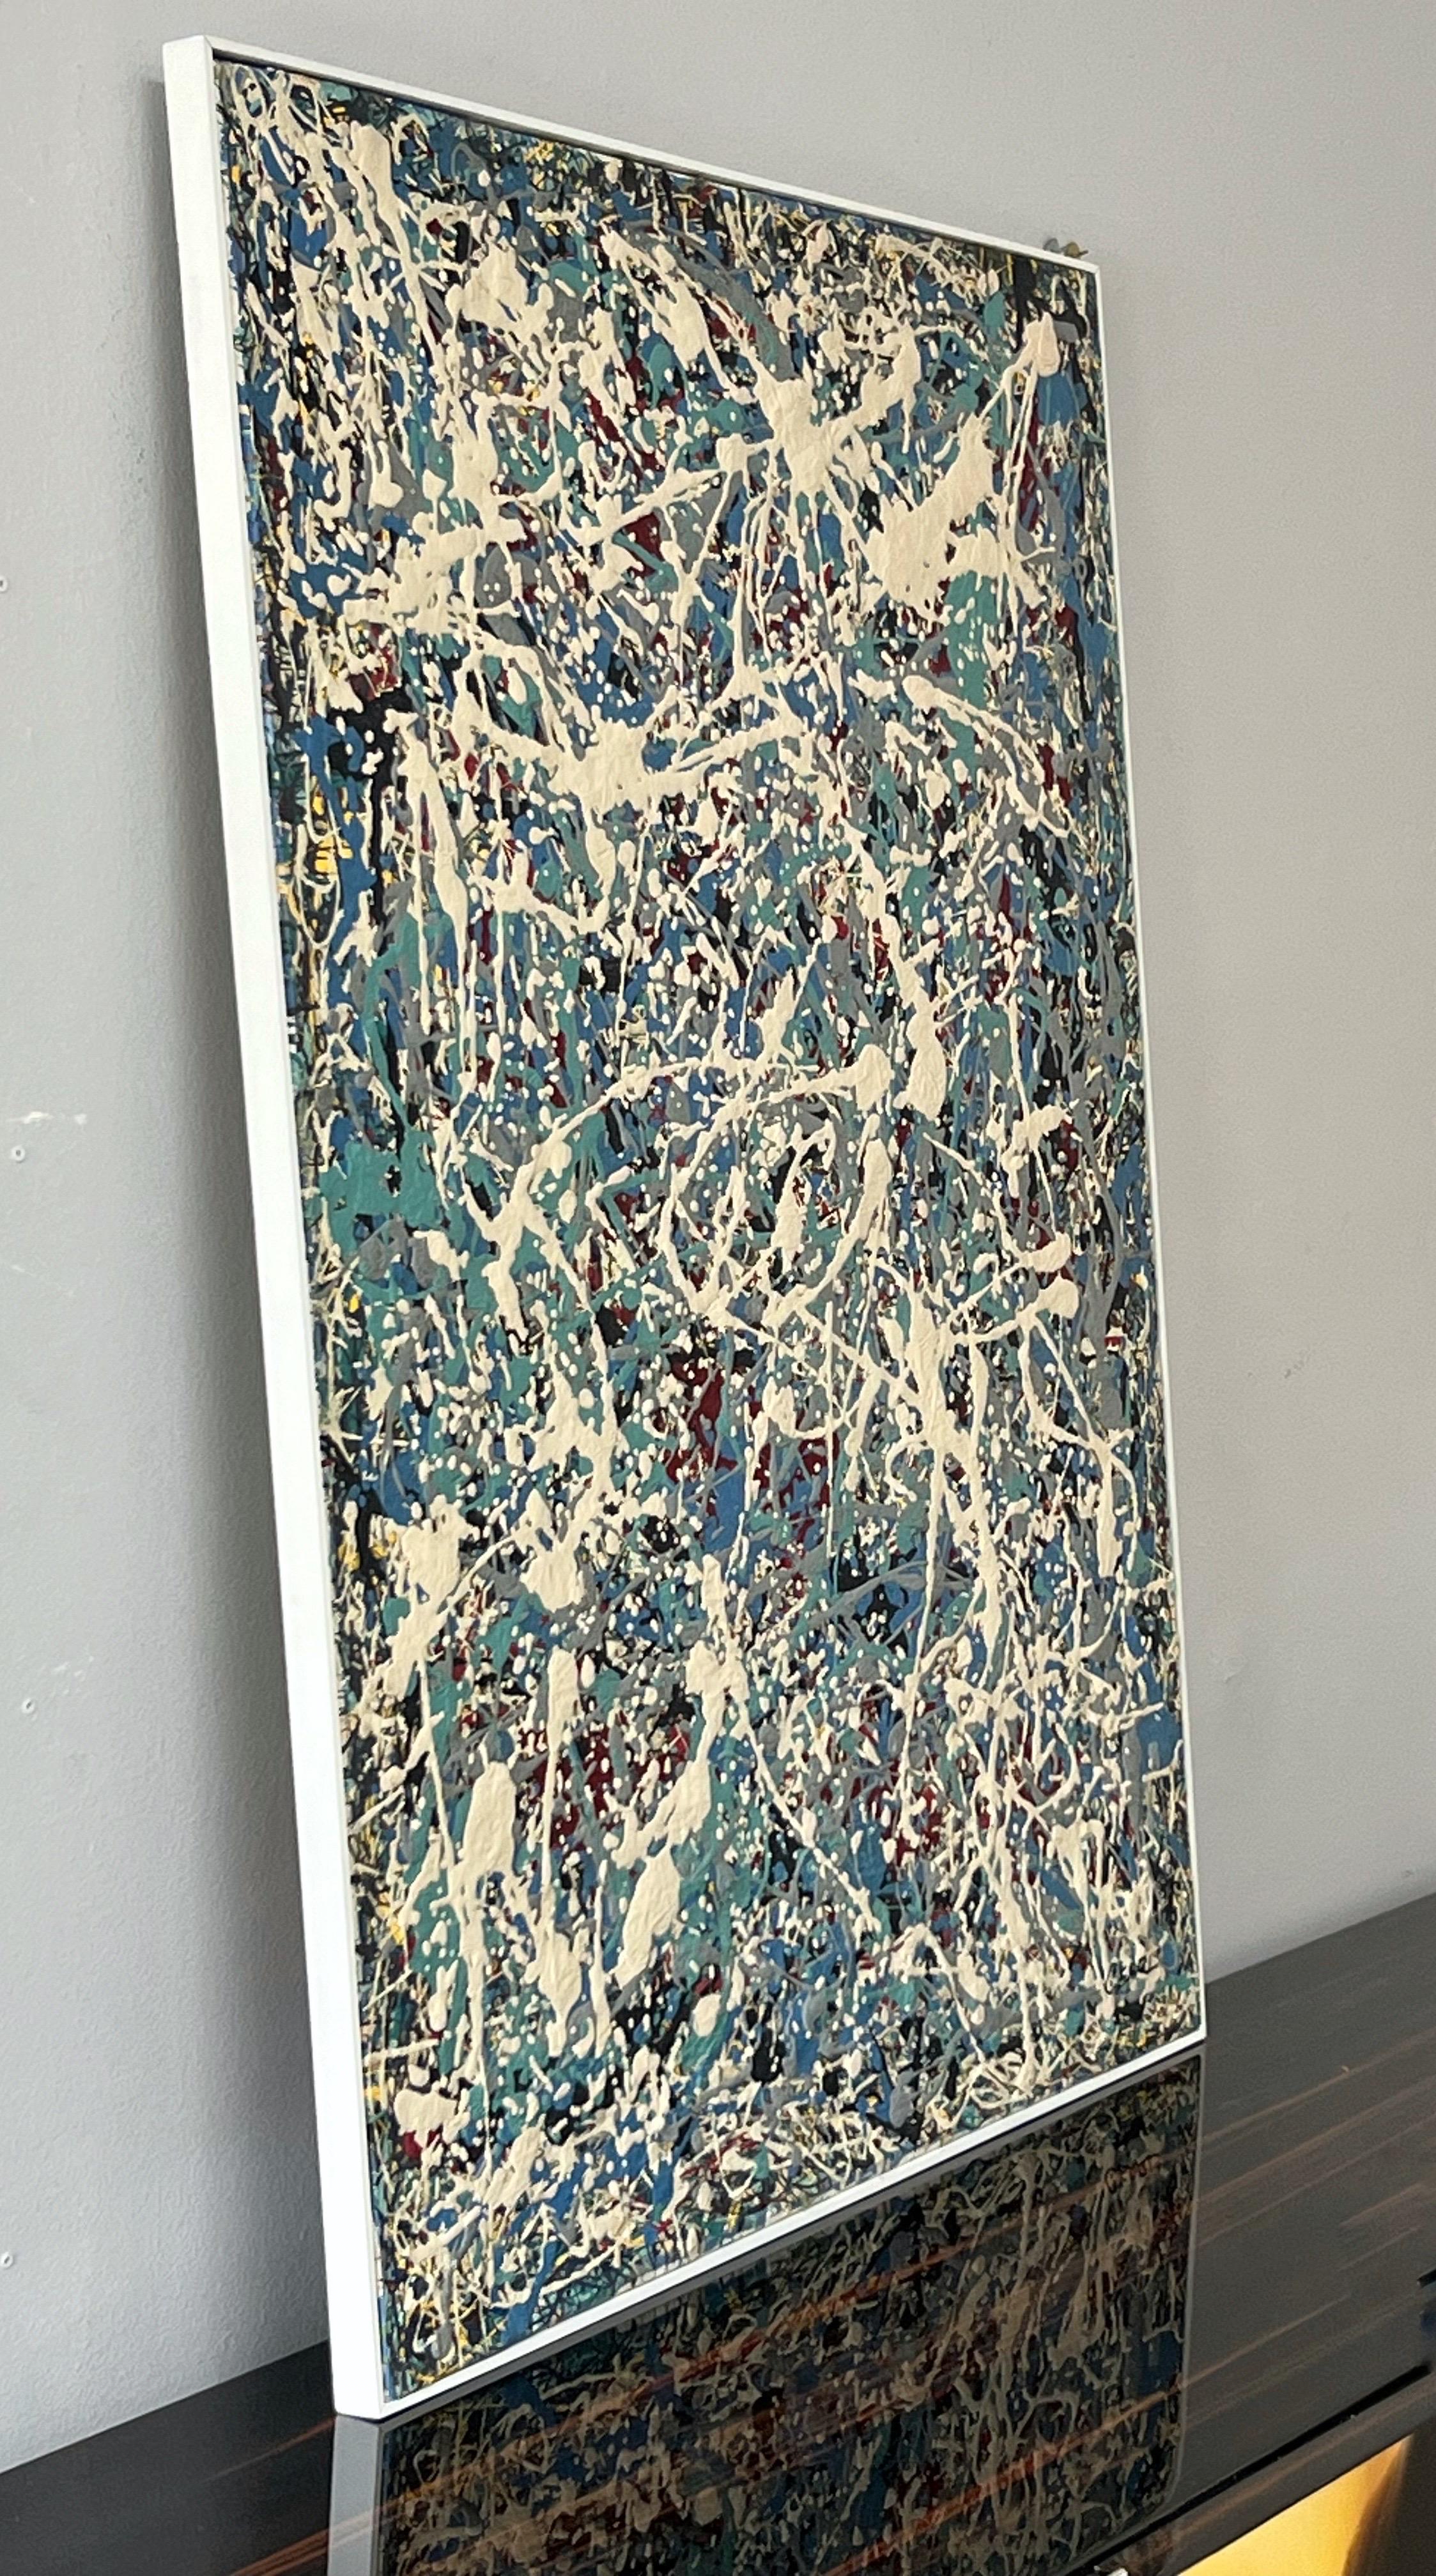 Peinture impressionniste abstraite au goutte-à-goutte d'après Jackson Pollock. De belles couleurs. 